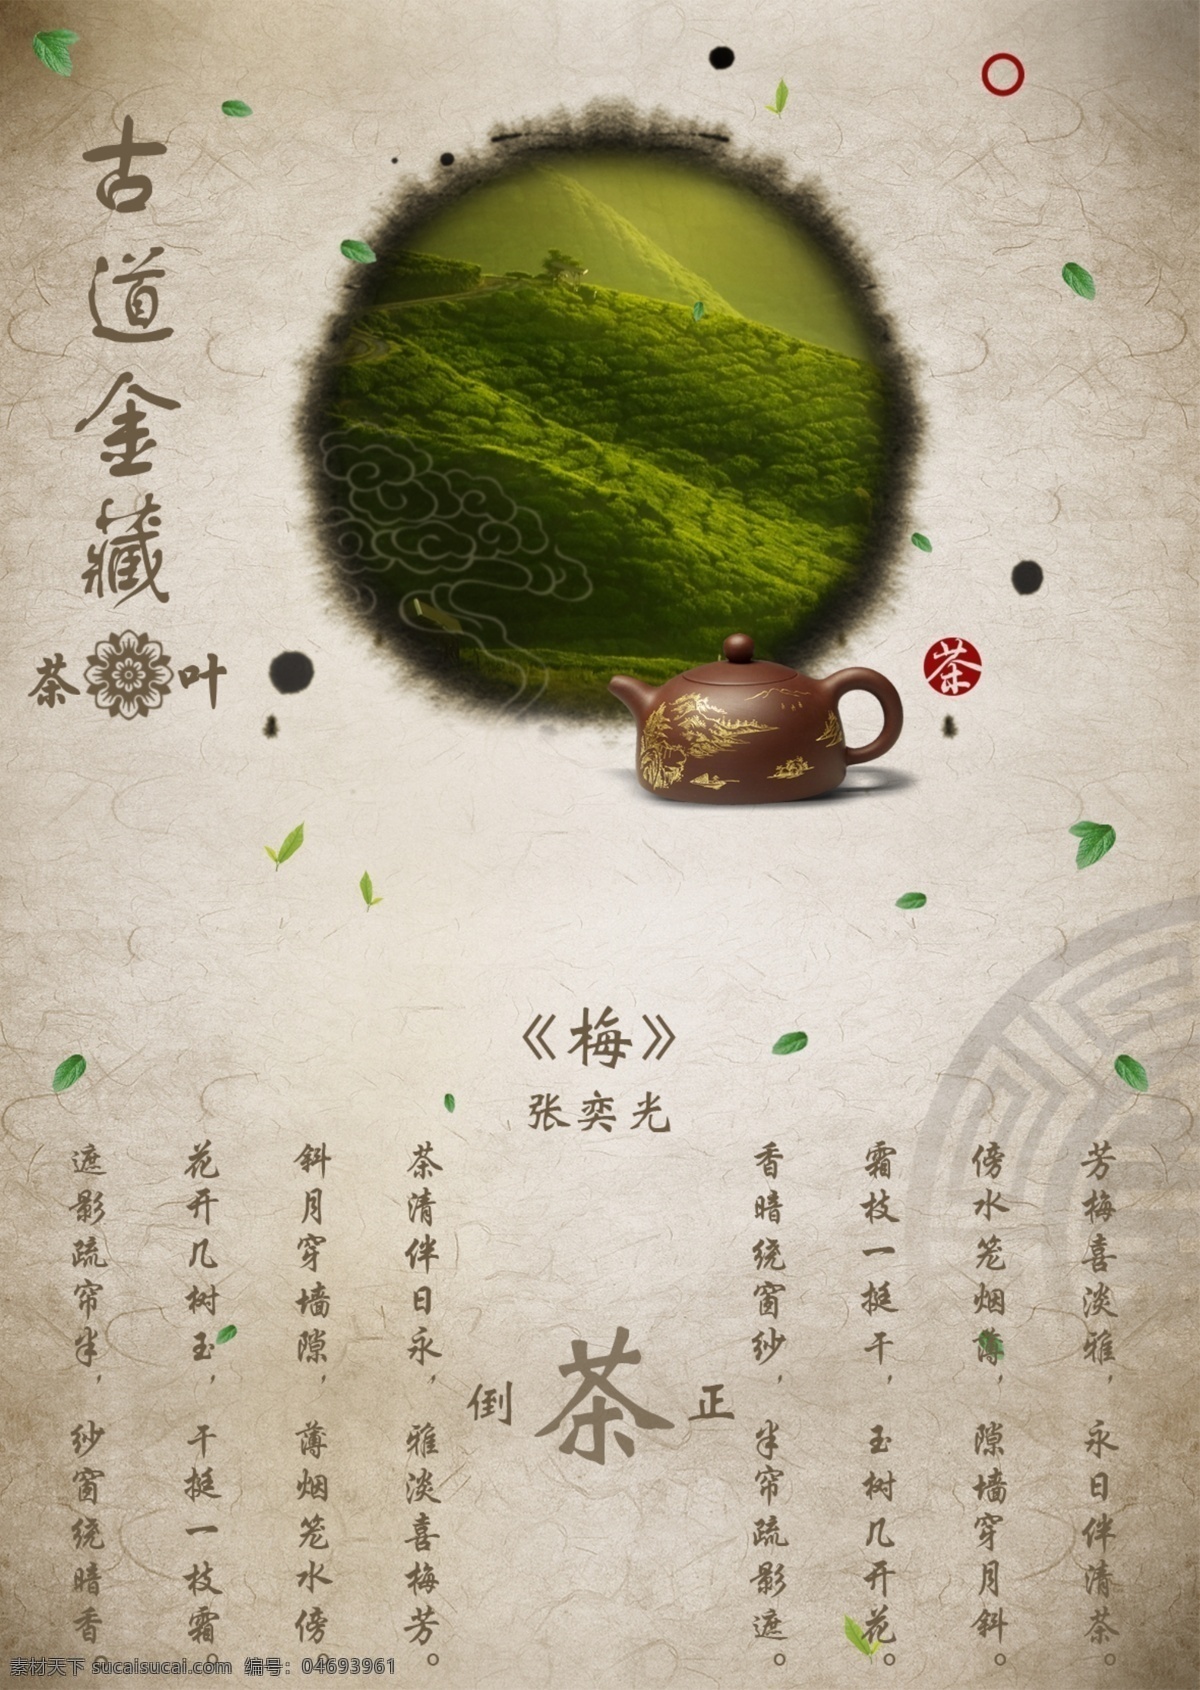 古道 金 藏 茶文化 海报 模板 古风 中国 风 背景 古道金藏 茶文化海报 中国风海报 水墨 茶叶 茶壶 中国元素 传统文化素材 传统元素 绿茶